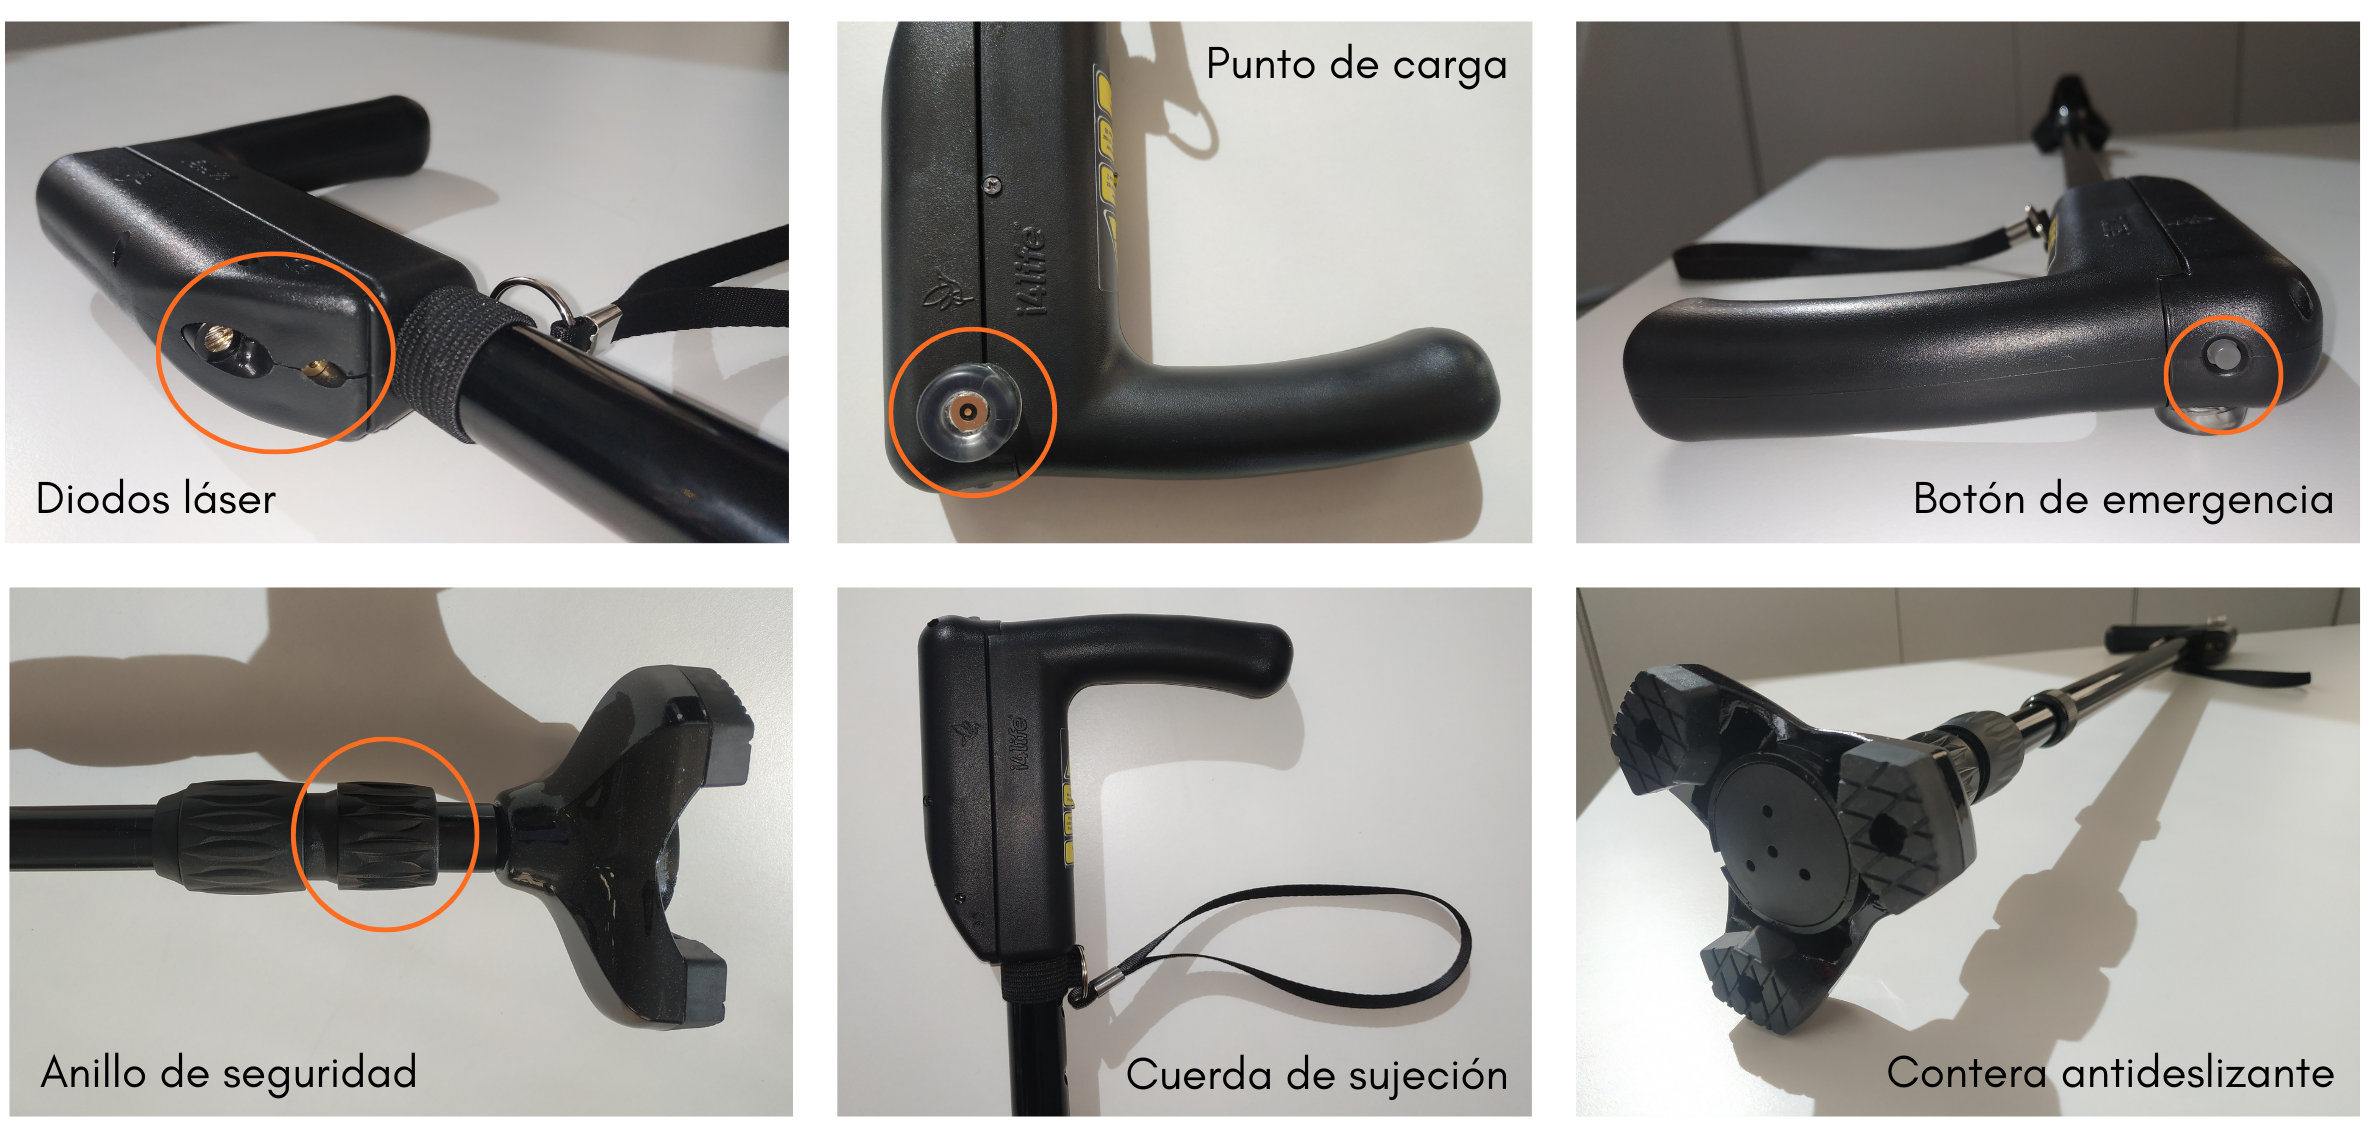 Fotos detalle del bastón Pauto: diodos láser, punto de carga, botón de emergencia, anillo de seguridad. cuerda de sujeción, contera de seguridad